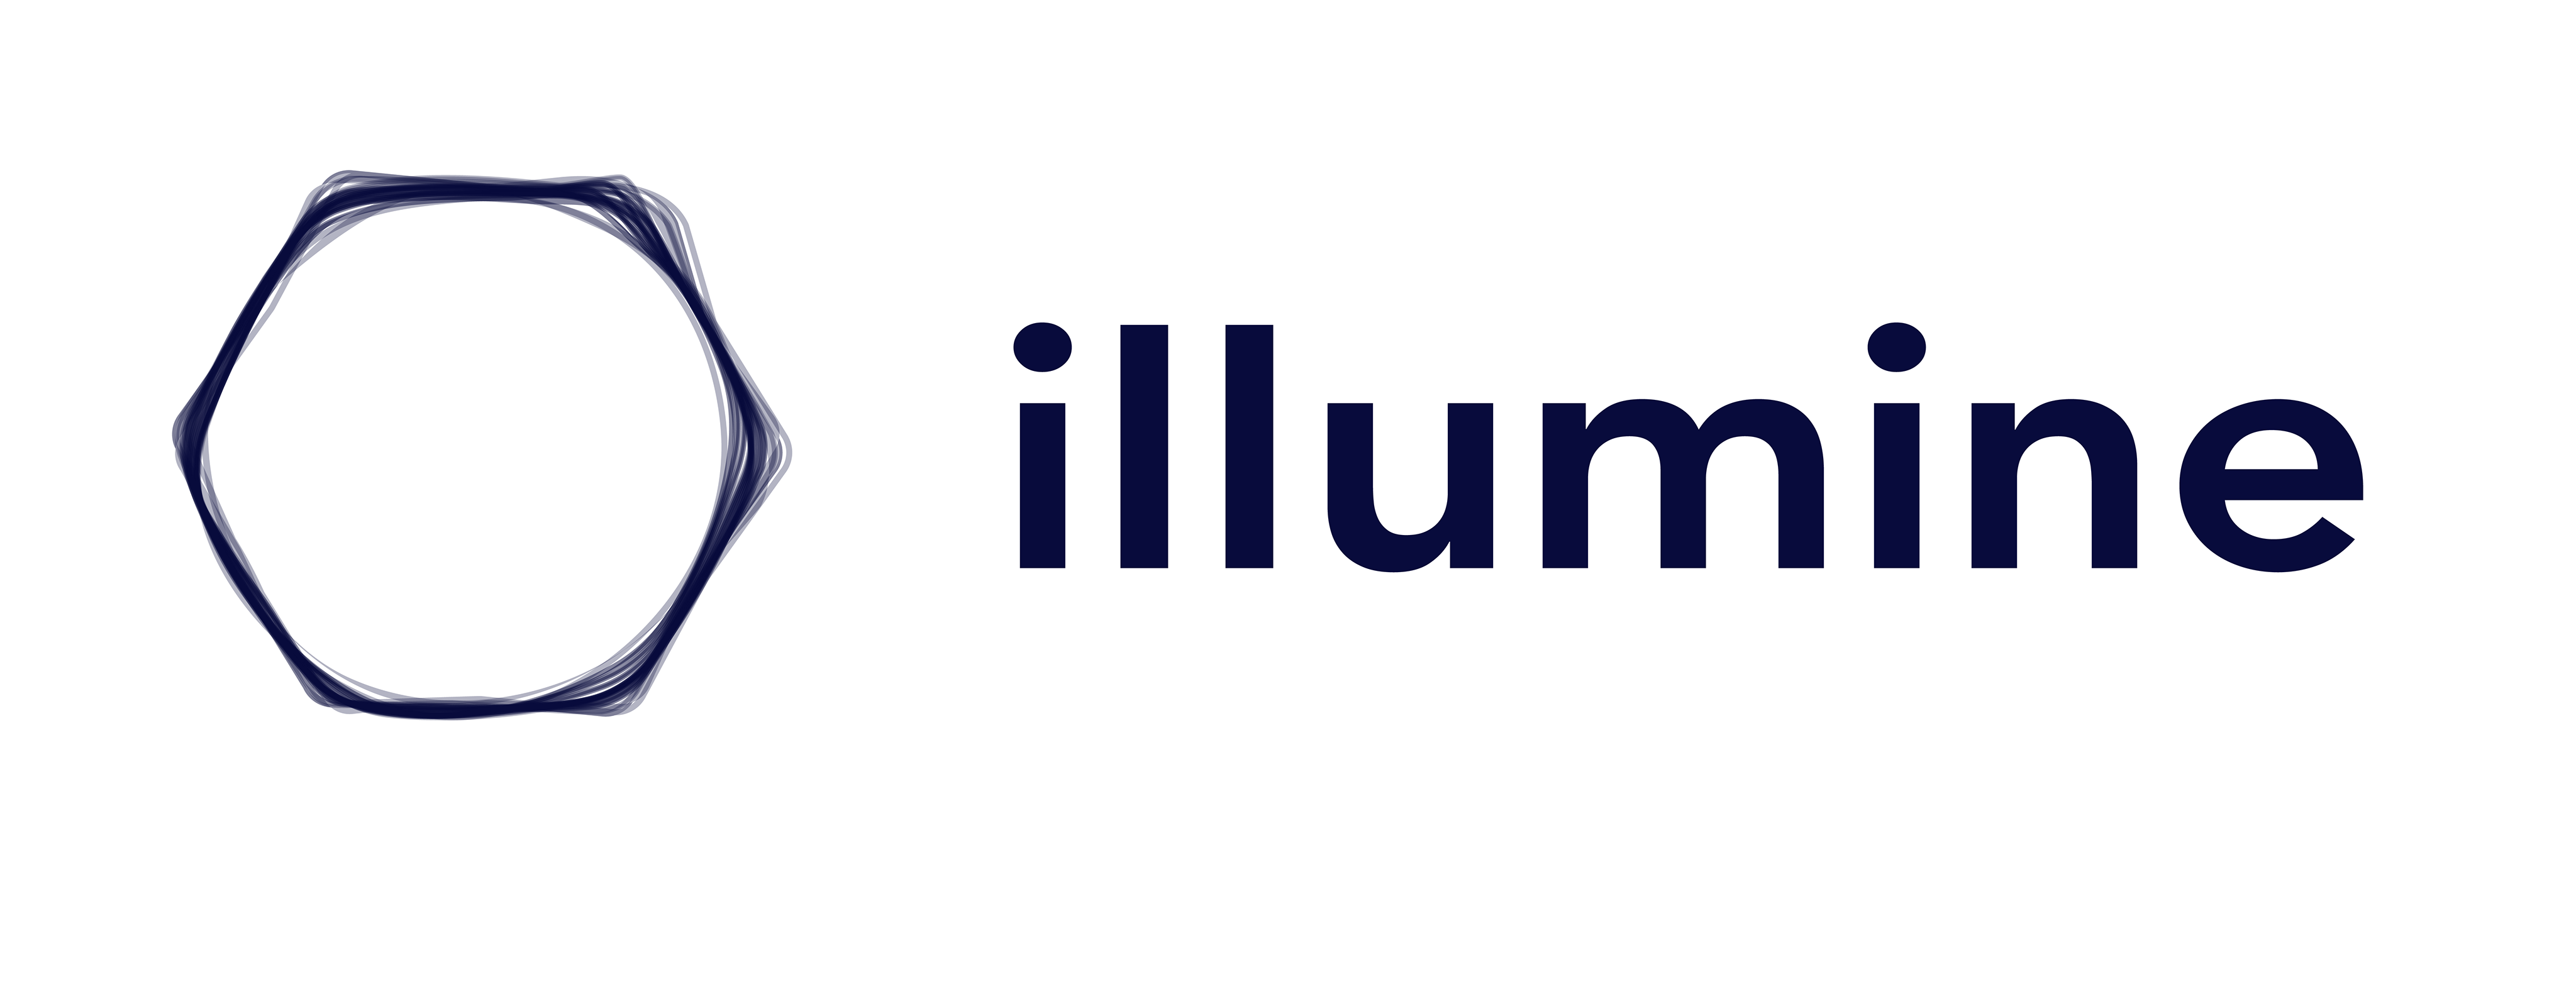 Logo Illumine